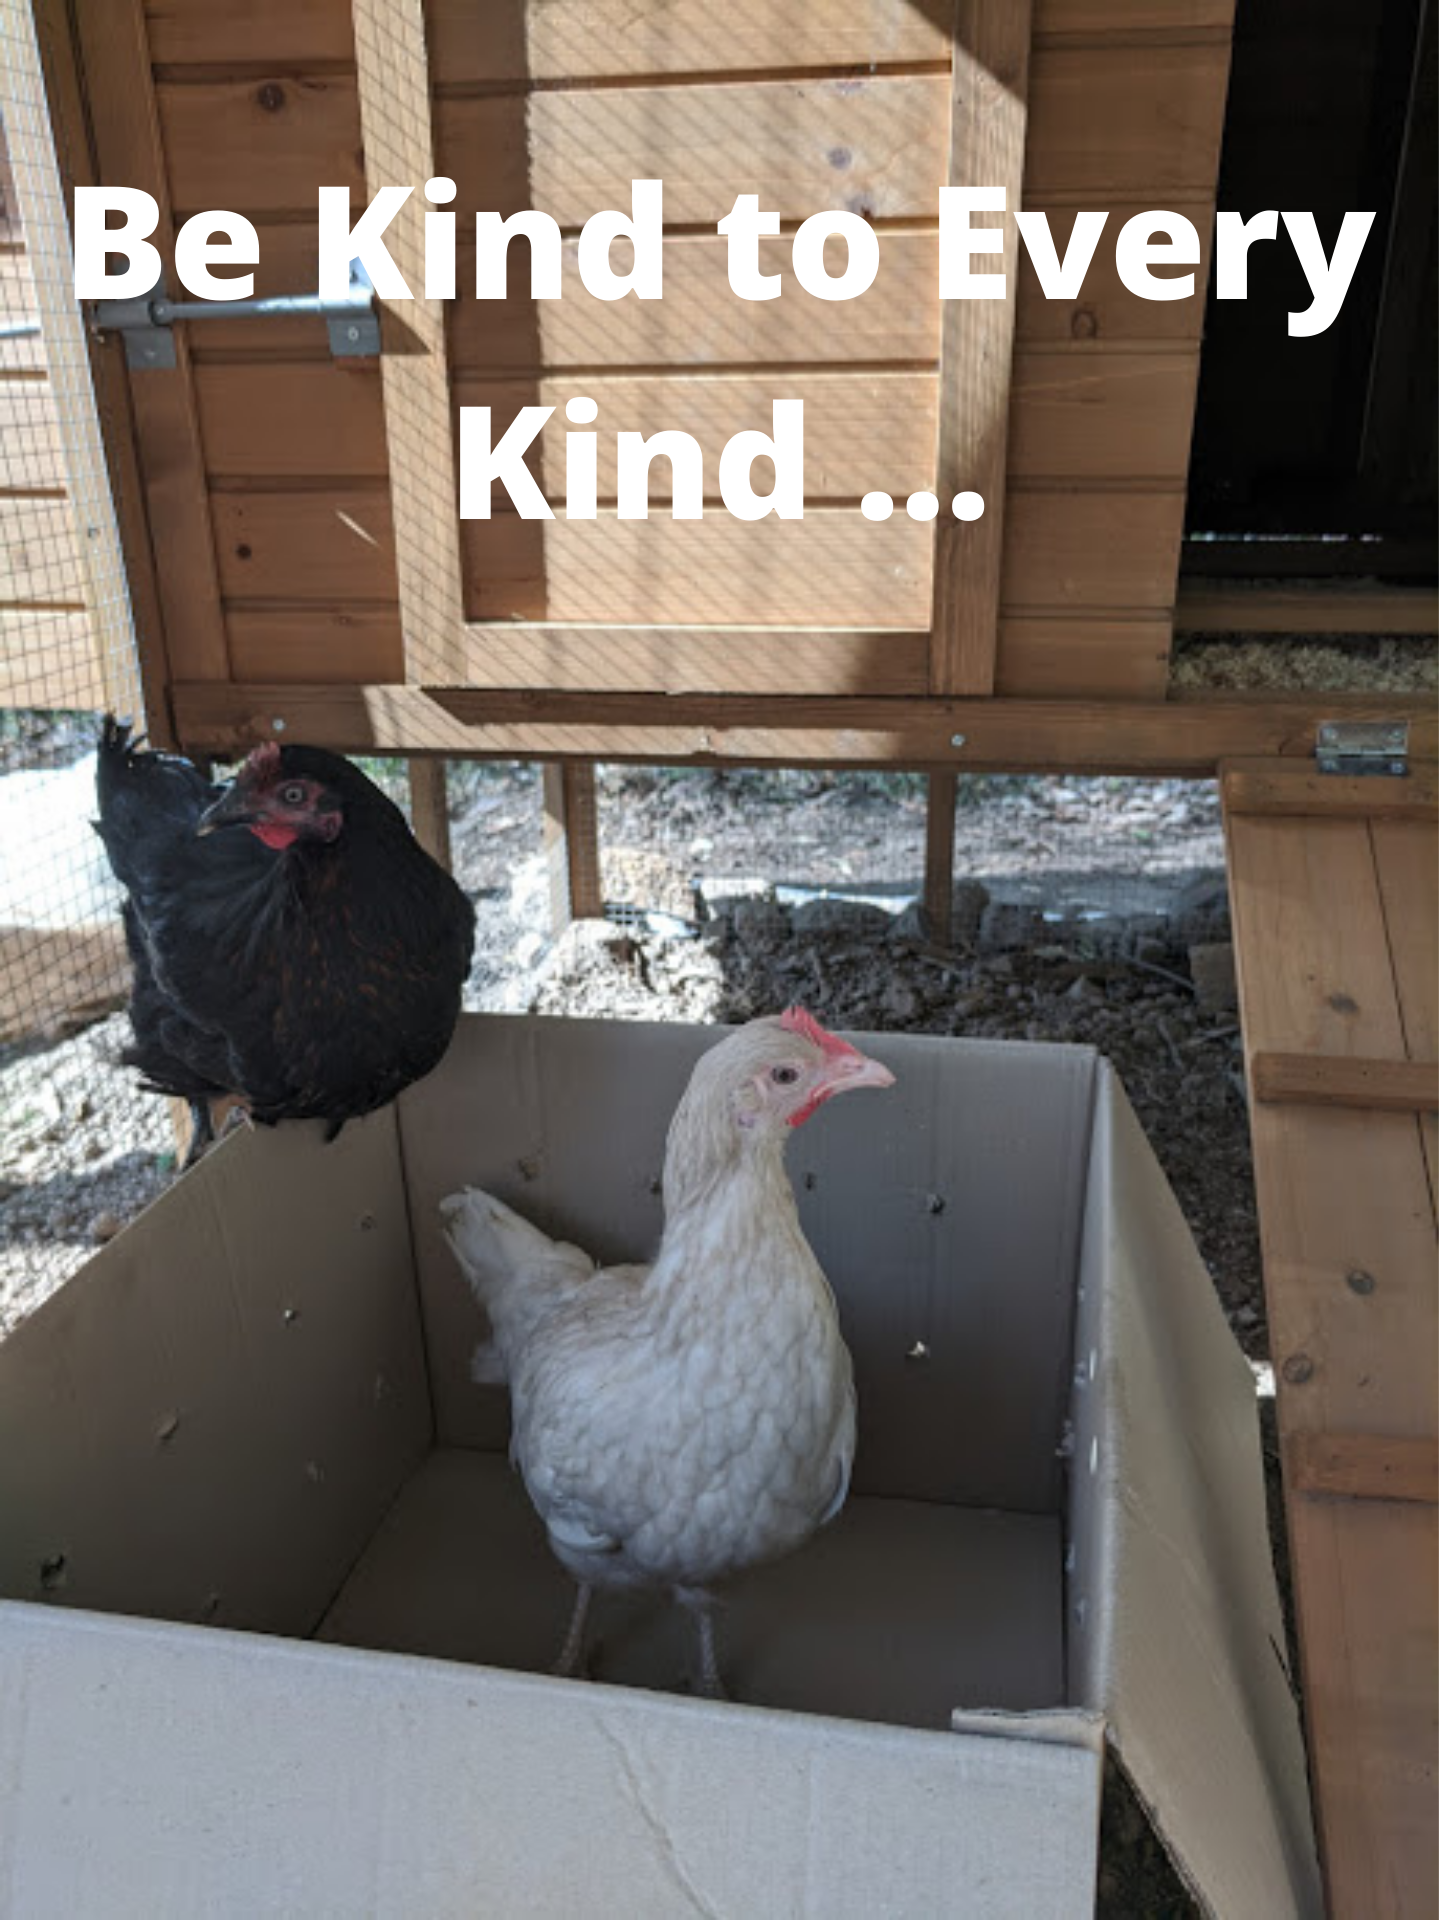 Be kind to every kind